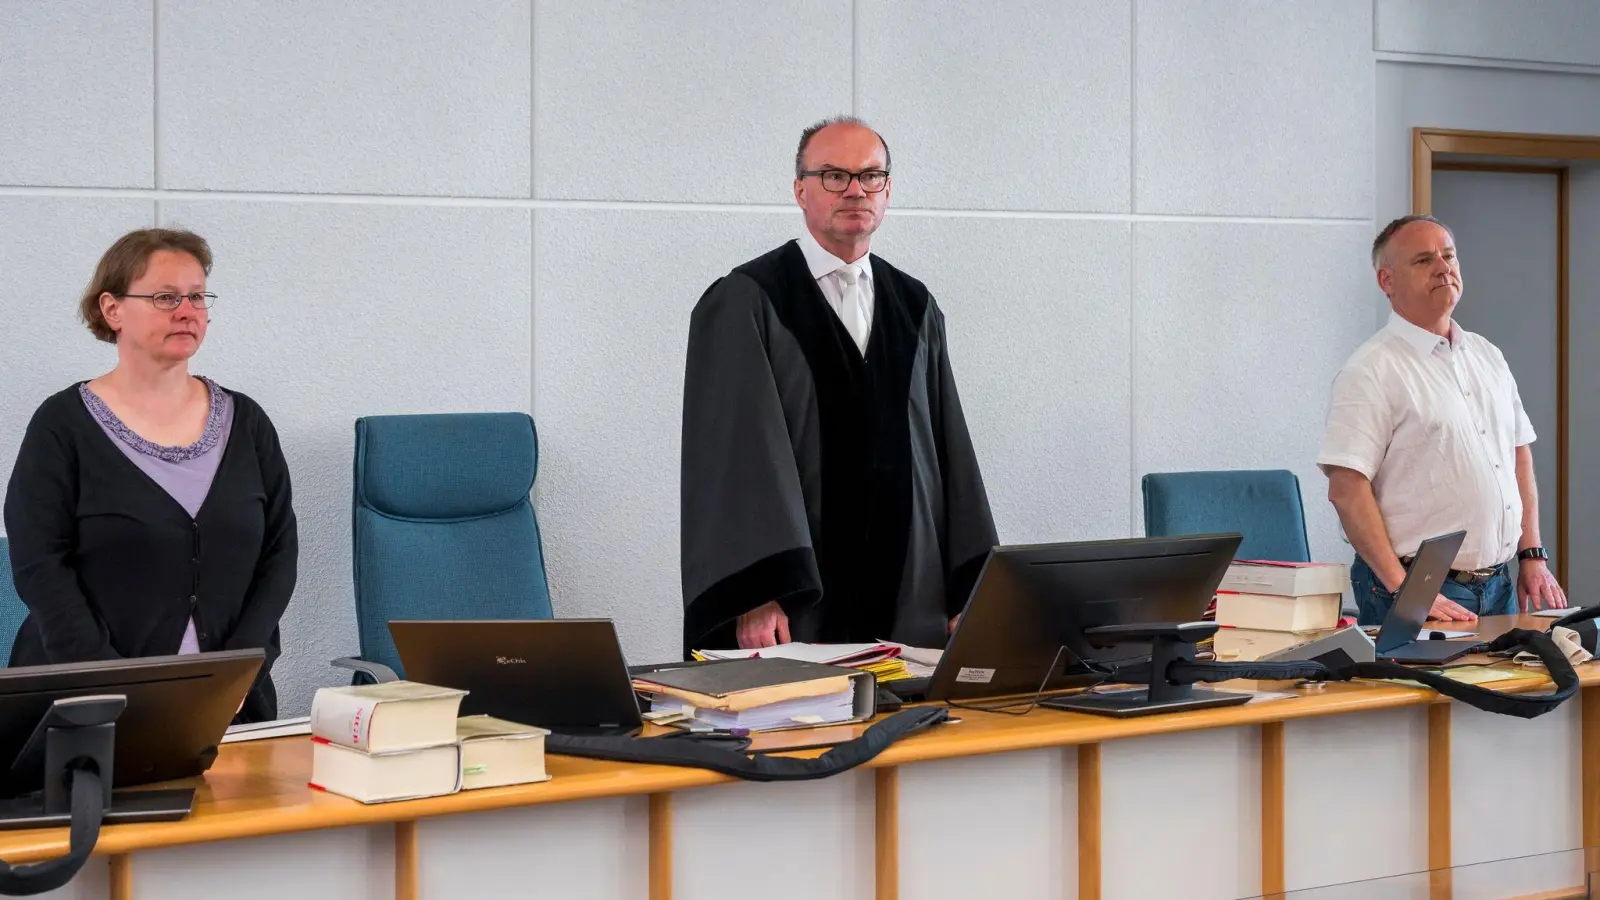 Der vorsitzende Richter am Amtsgericht Bachmann (M.) zu Beginn der Sitzung in Bamberg. (Foto: Daniel Vogl/dpa)